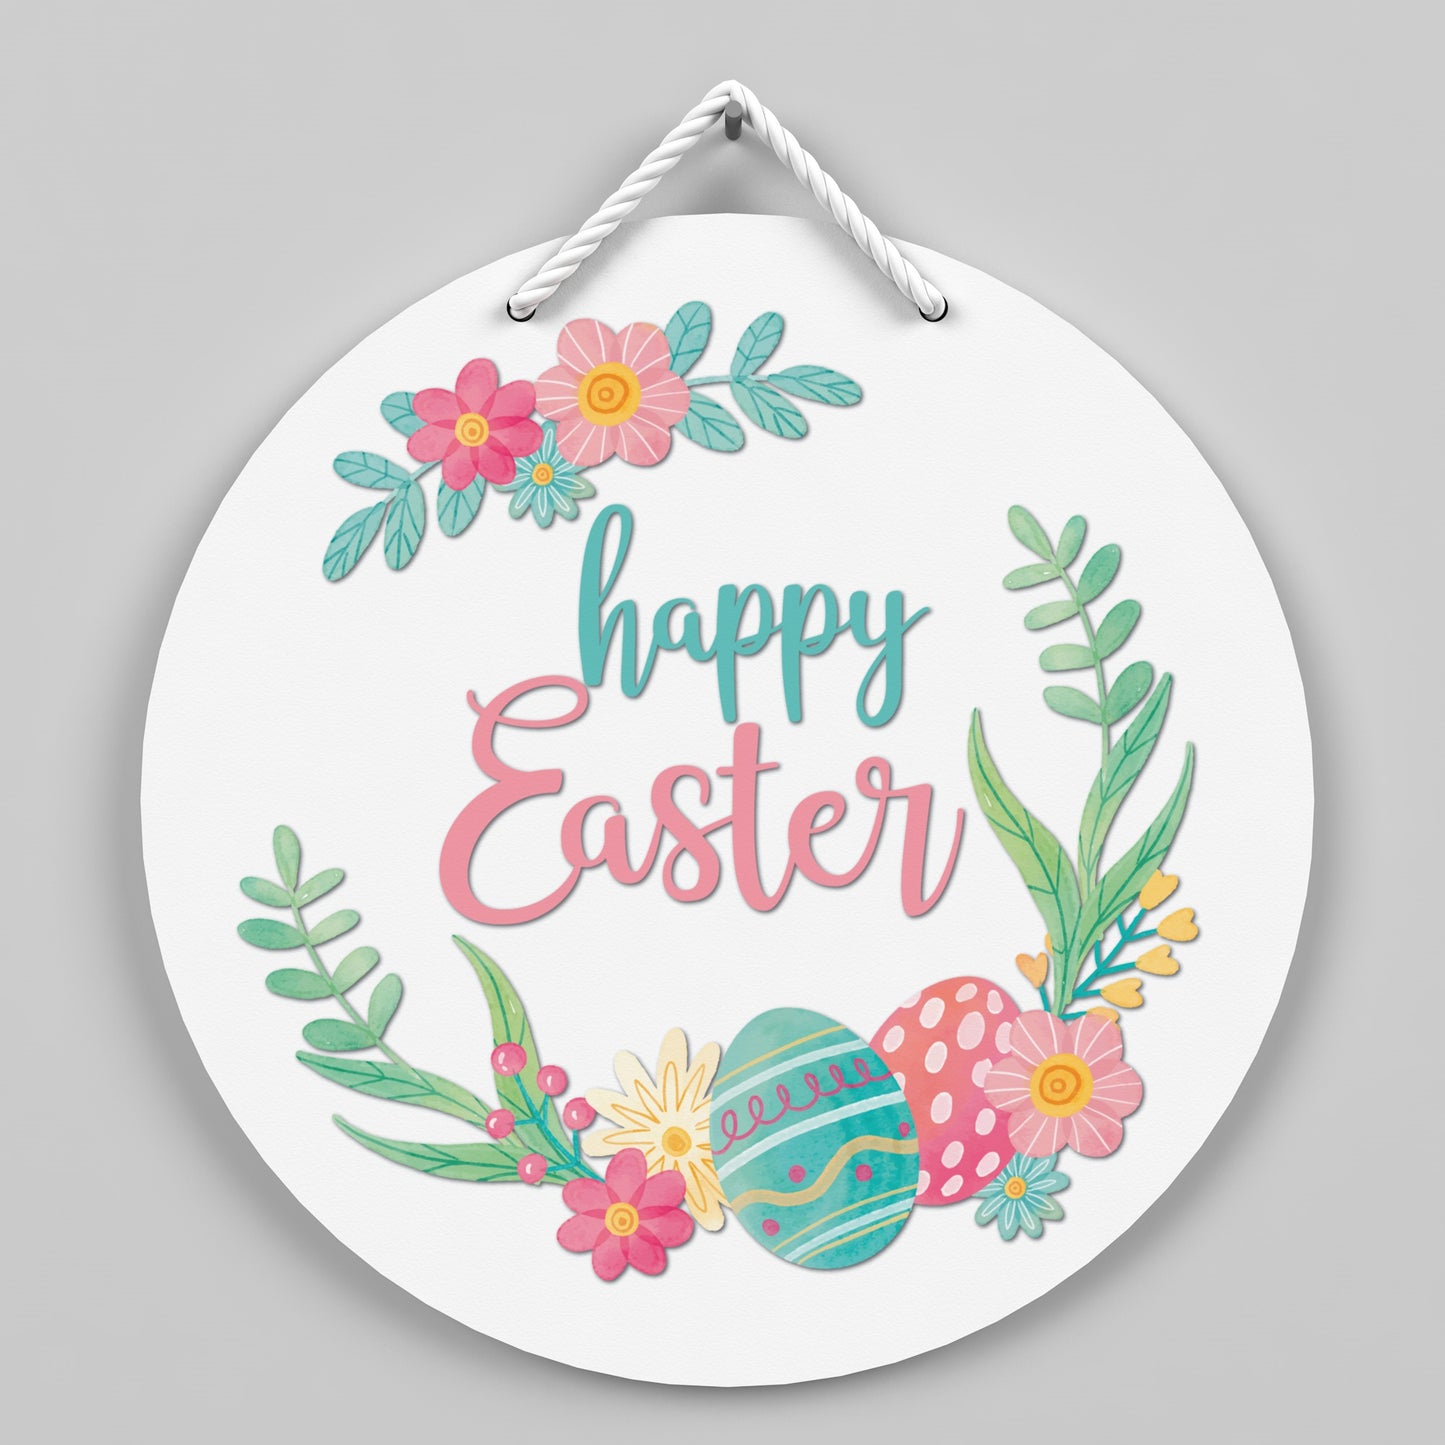 Happy Easter Door Hanger Sign